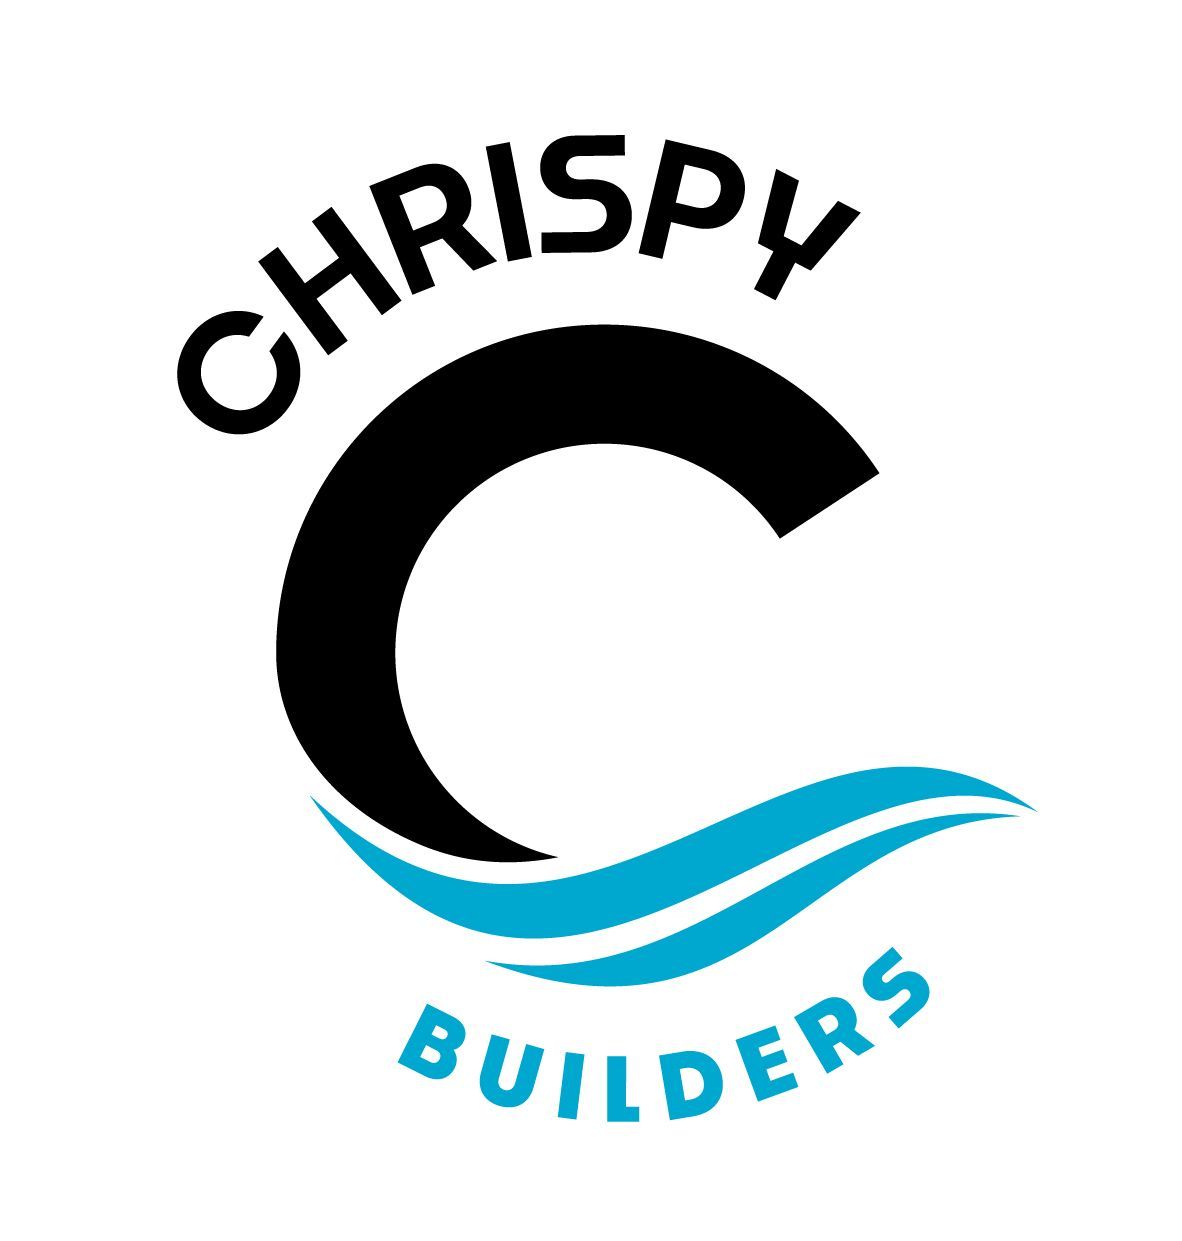 Chrispy Builders logo